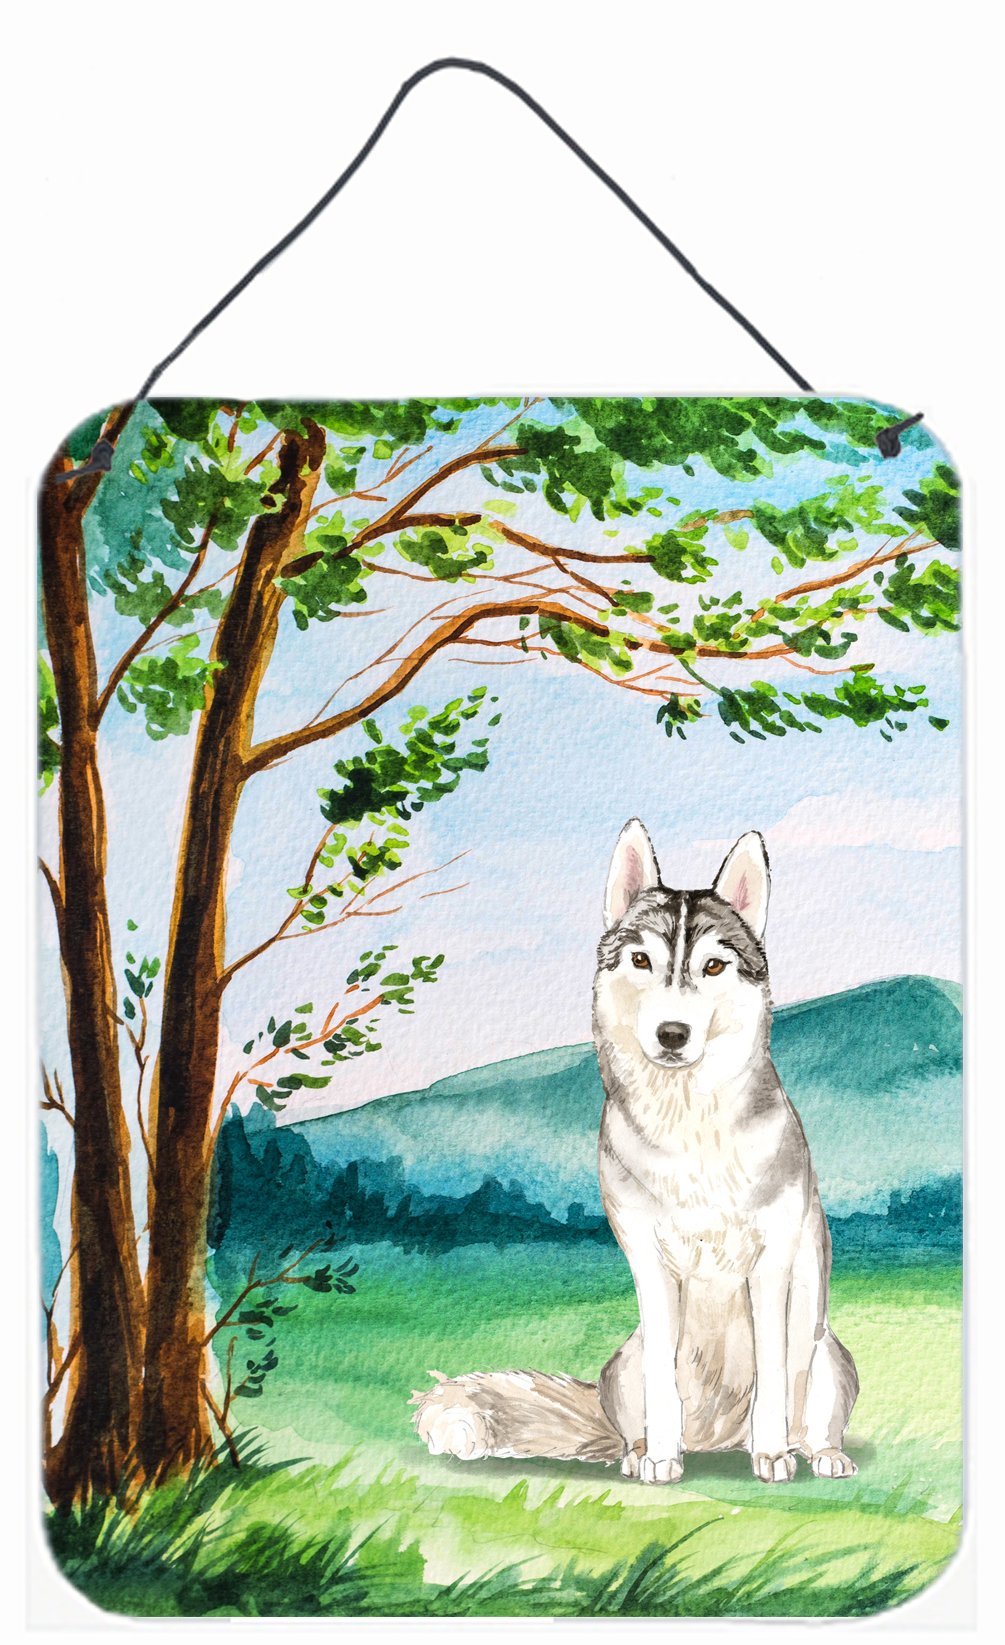 Under the Tree Siberian Husky Wall or Door Hanging Prints CK2555DS1216 by Caroline's Treasures